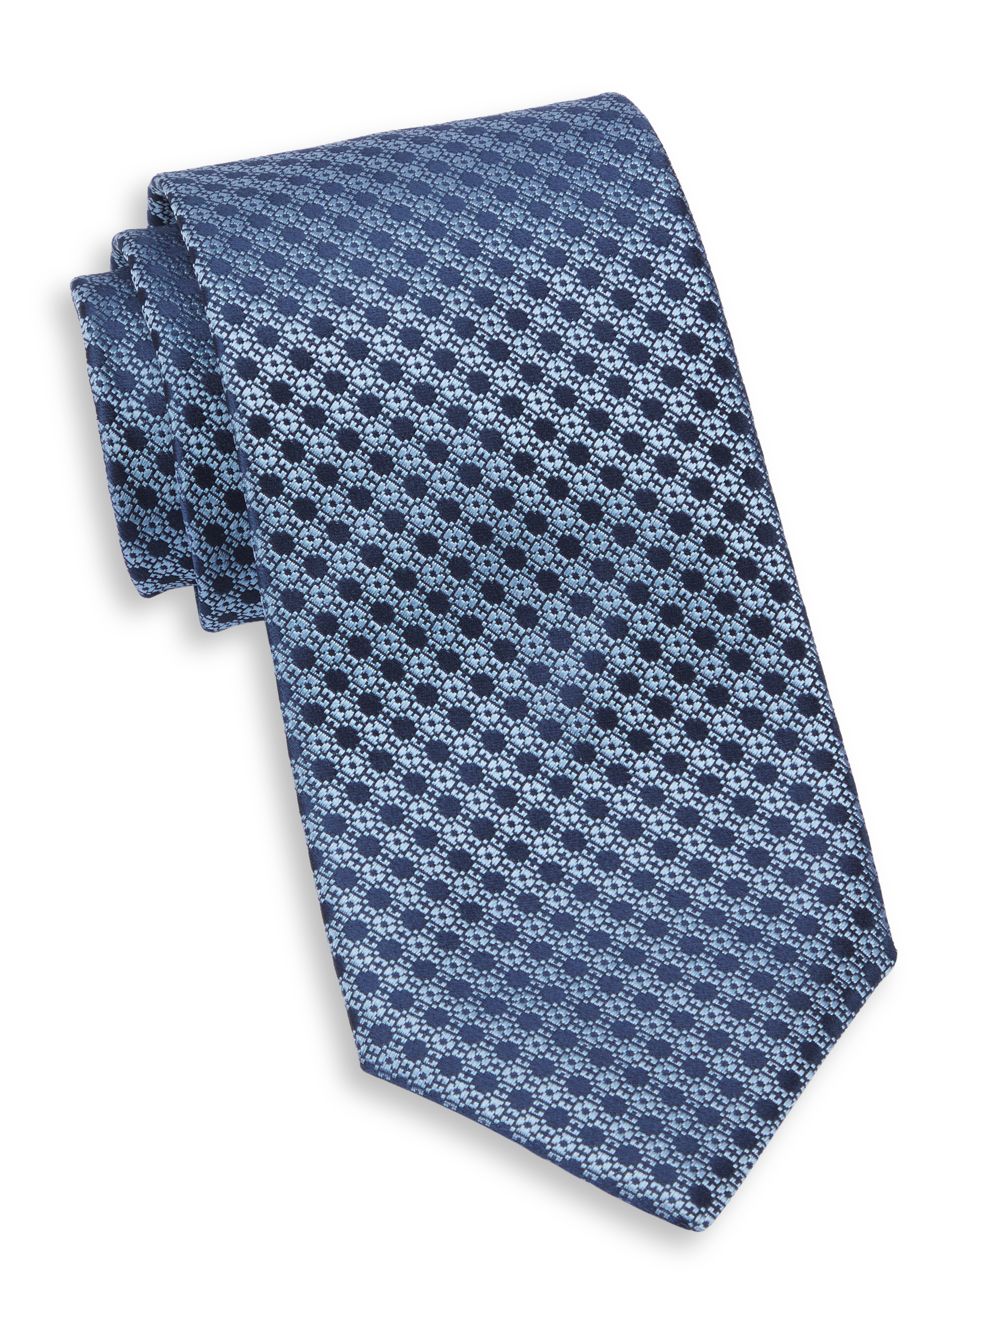 Шелковый галстук NSS Geo Charvet, синий классический шелковый галстук charvet синий